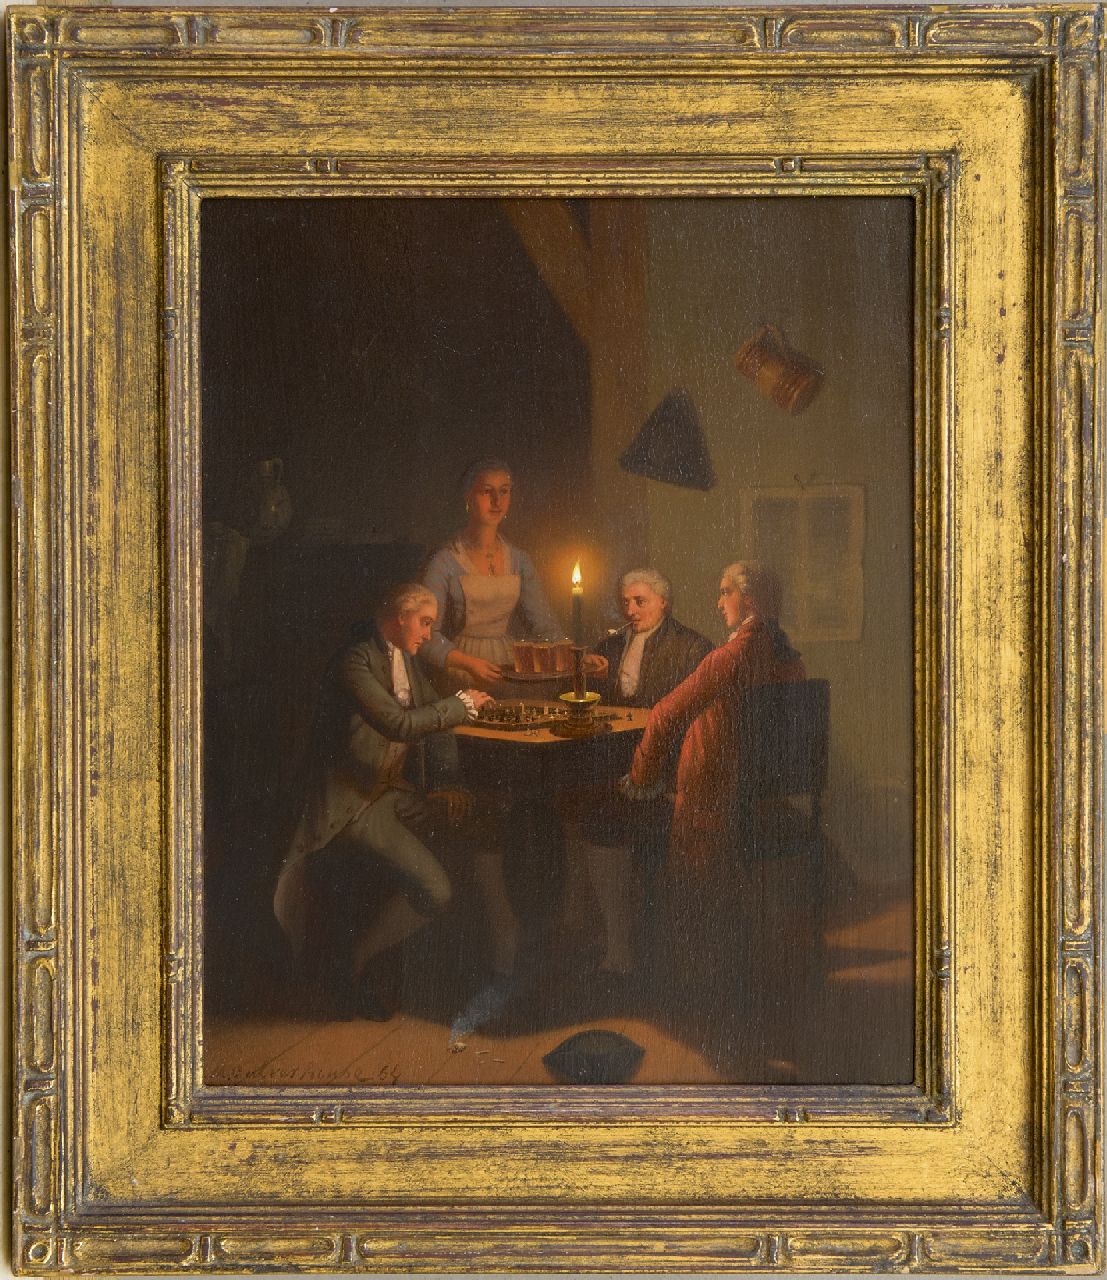 Culverhouse J.M.  | Johan Mengels Culverhouse | Schilderijen te koop aangeboden | Drie bier voor de schaakspelers bij kaarslicht, olieverf op paneel 26,8 x 21,3 cm, gesigneerd linksonder en gedateerd '64